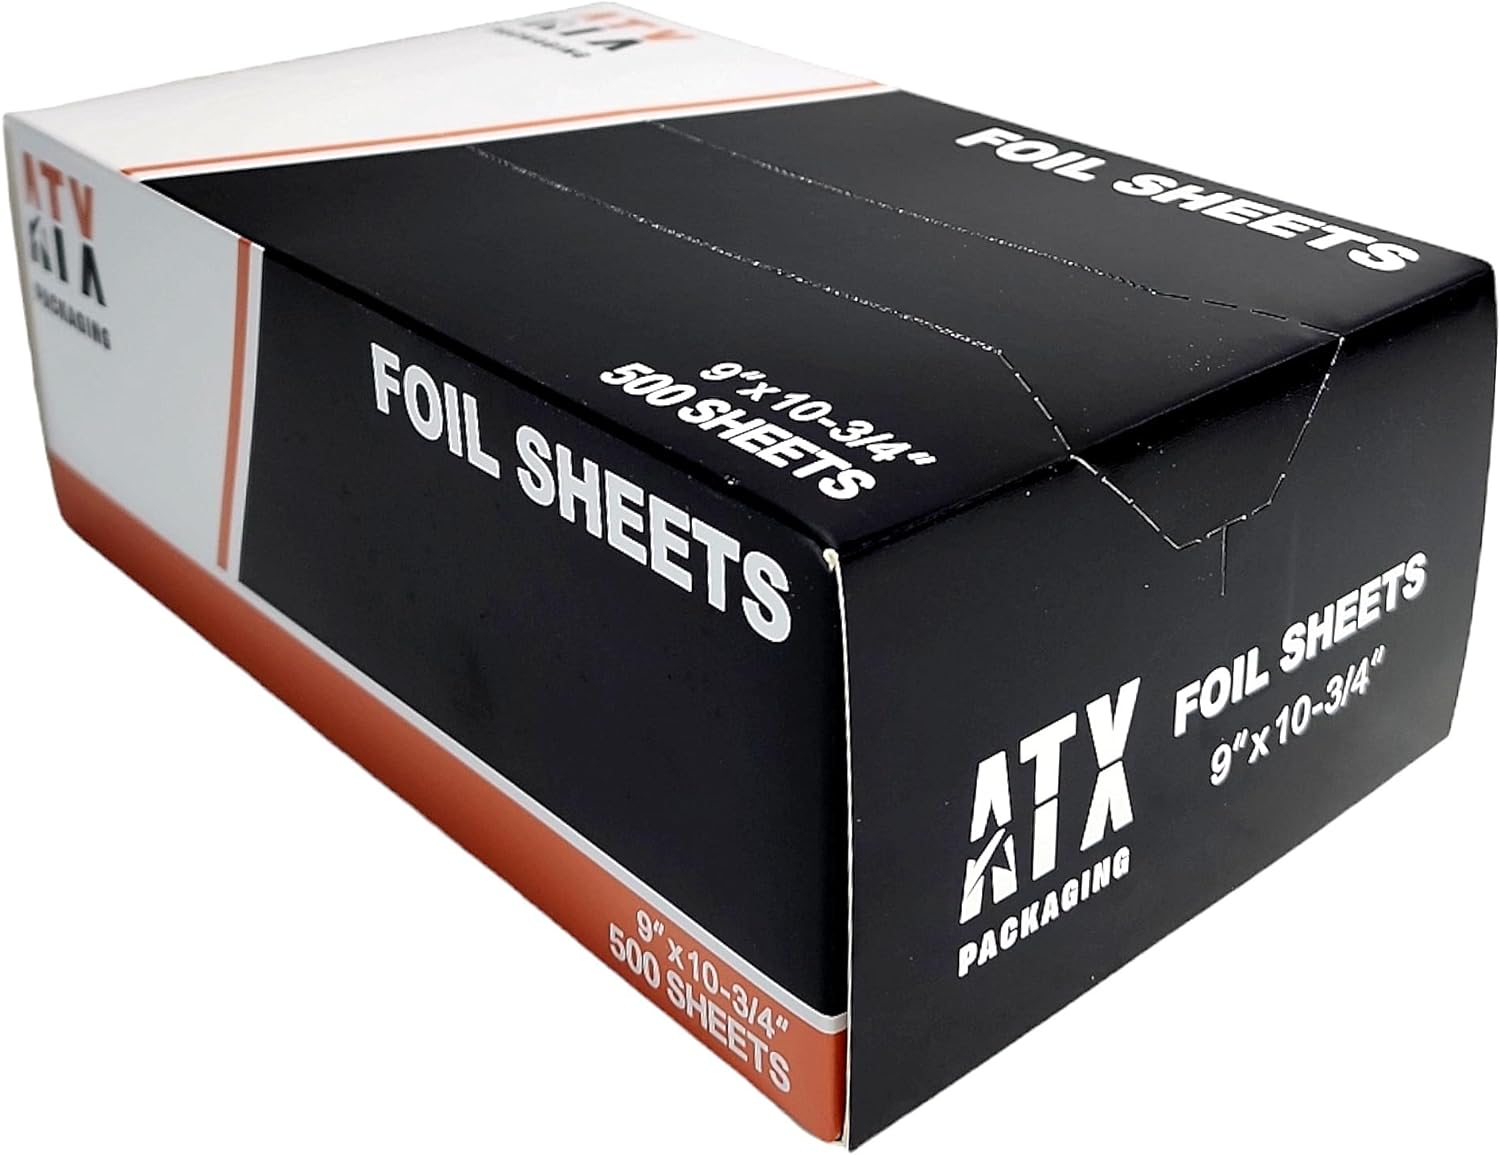 ATX 9 x 10.75 Pop-Up Foil Sheets 6 x 500/CS